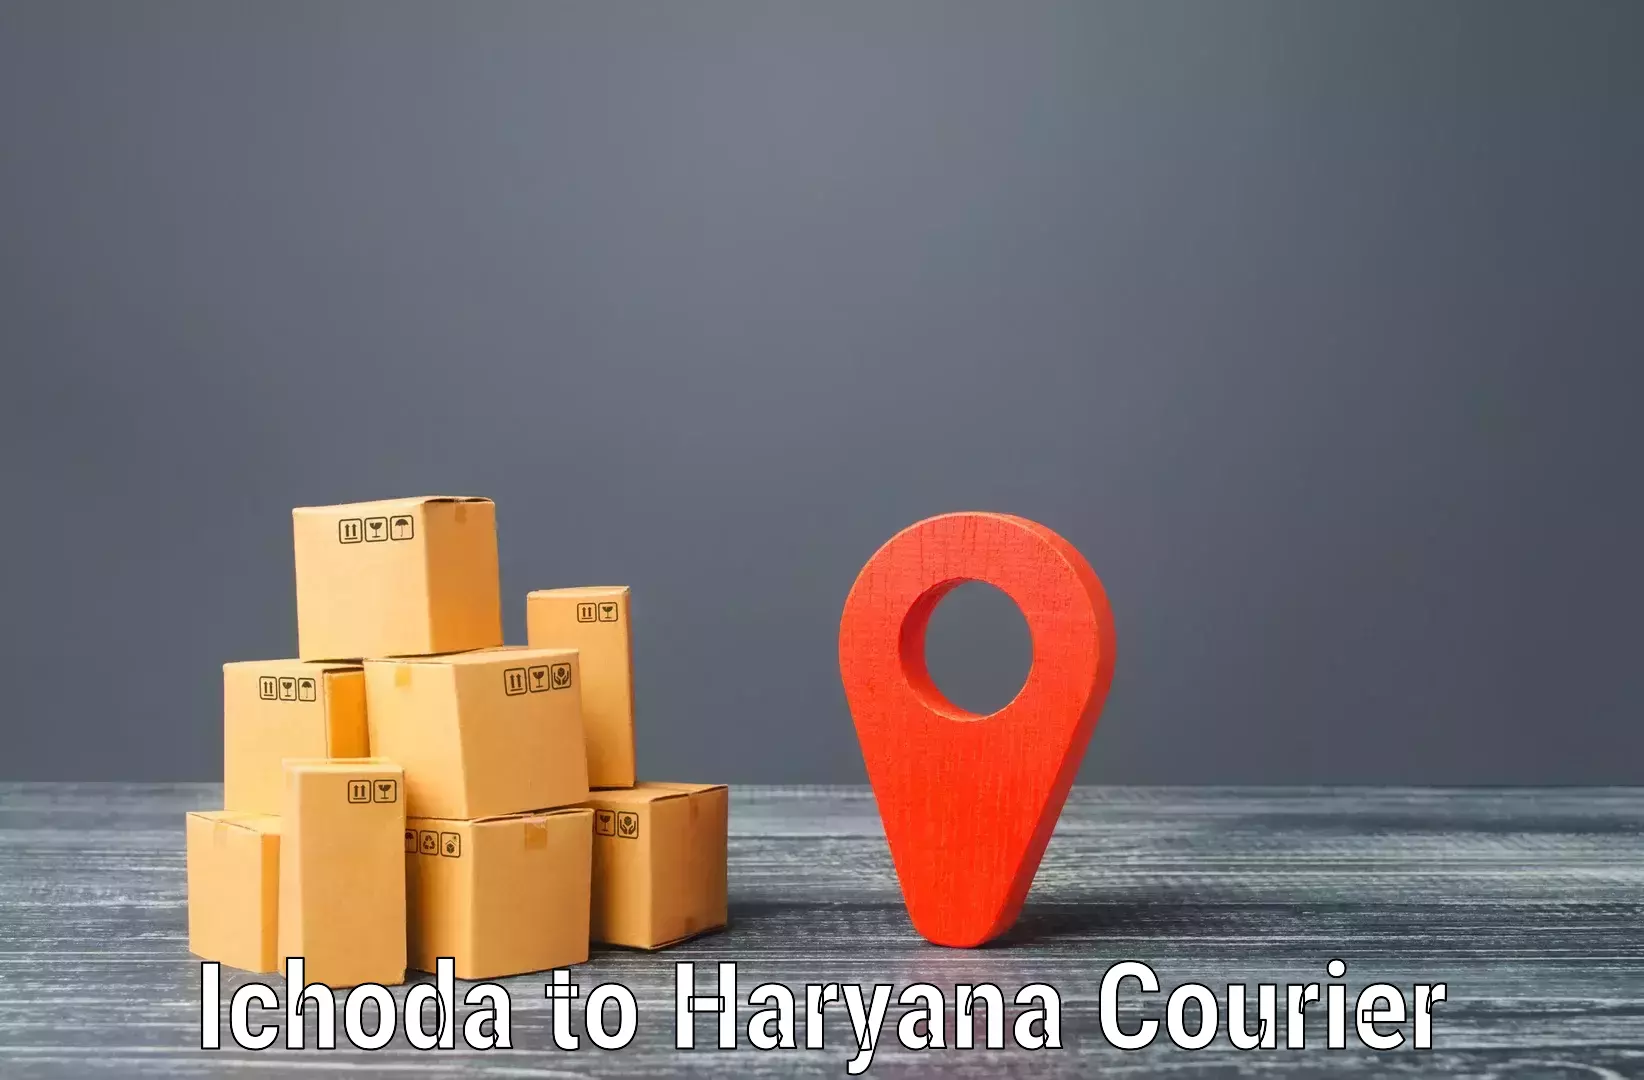 Flexible shipping options Ichoda to Dharuhera